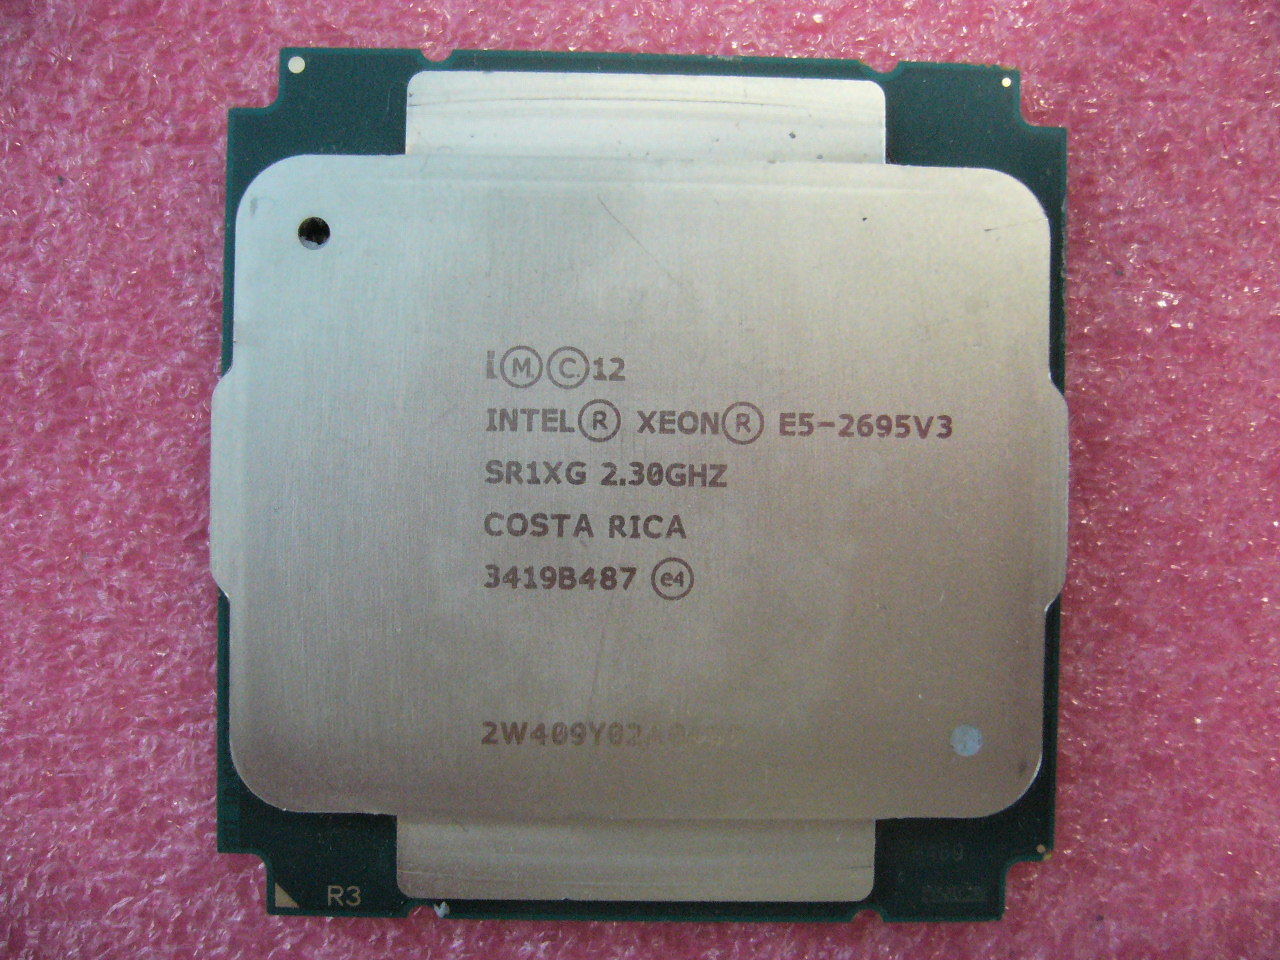 QTY 1x Intel E5-2695 V3 Xeon CPU 14-Cores 2.3Ghz 35MB Cache LGA2011 SR1XG